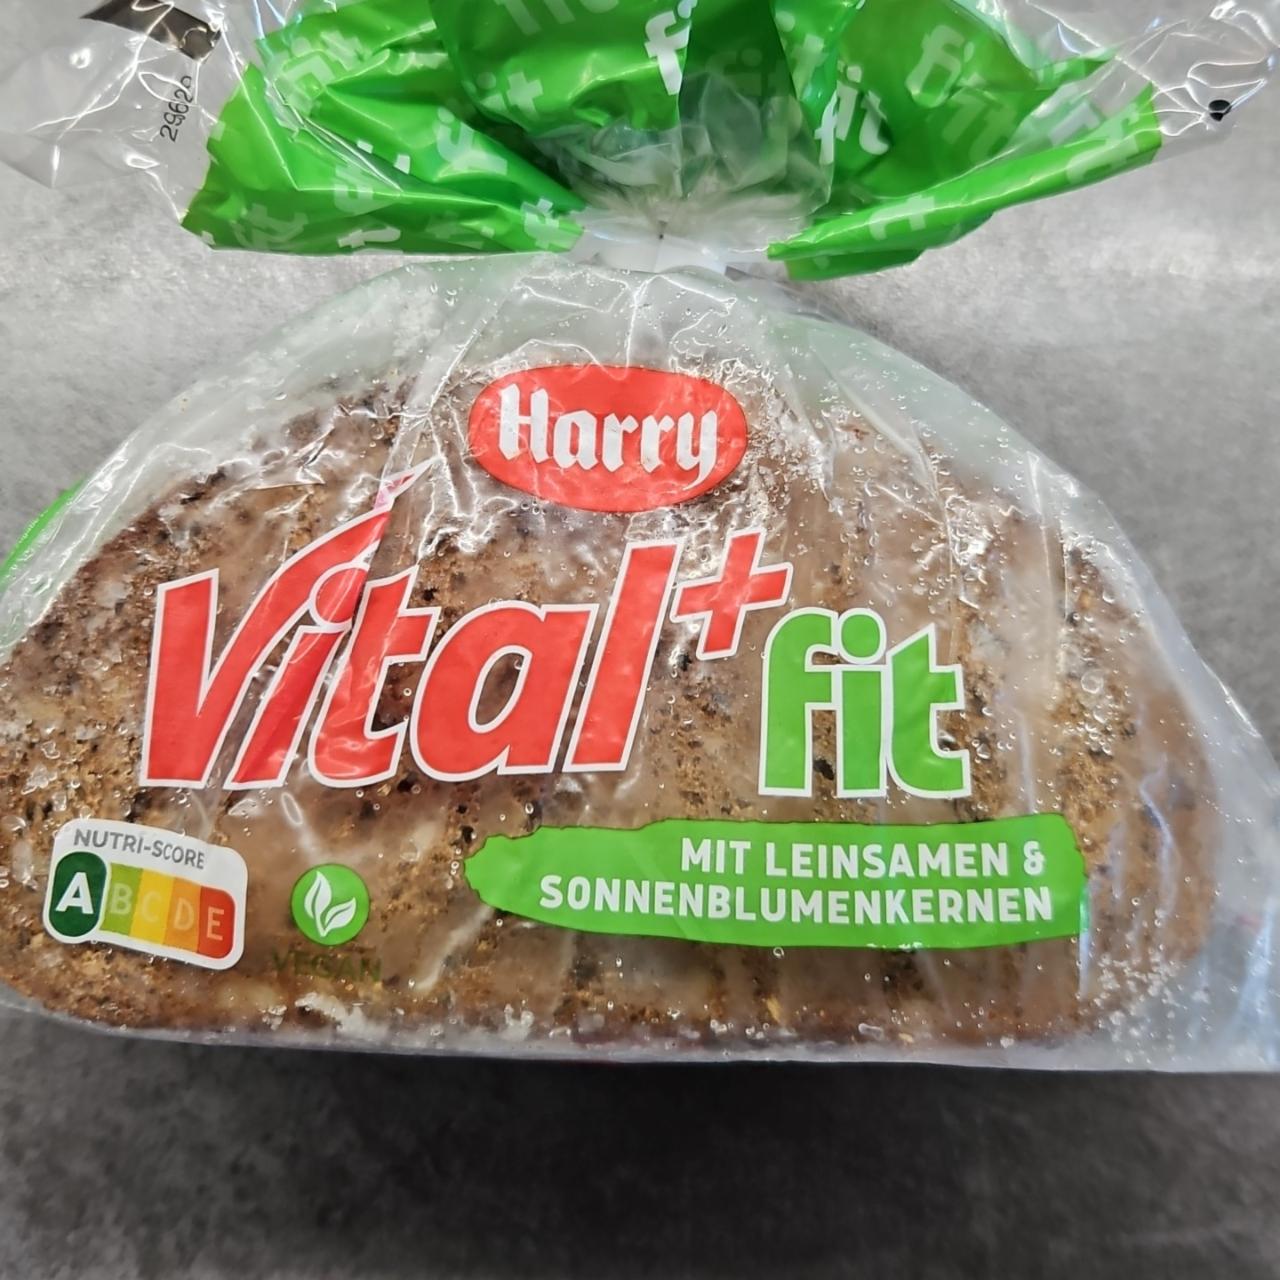 Фото - Хлеб VITAL+fit Harry